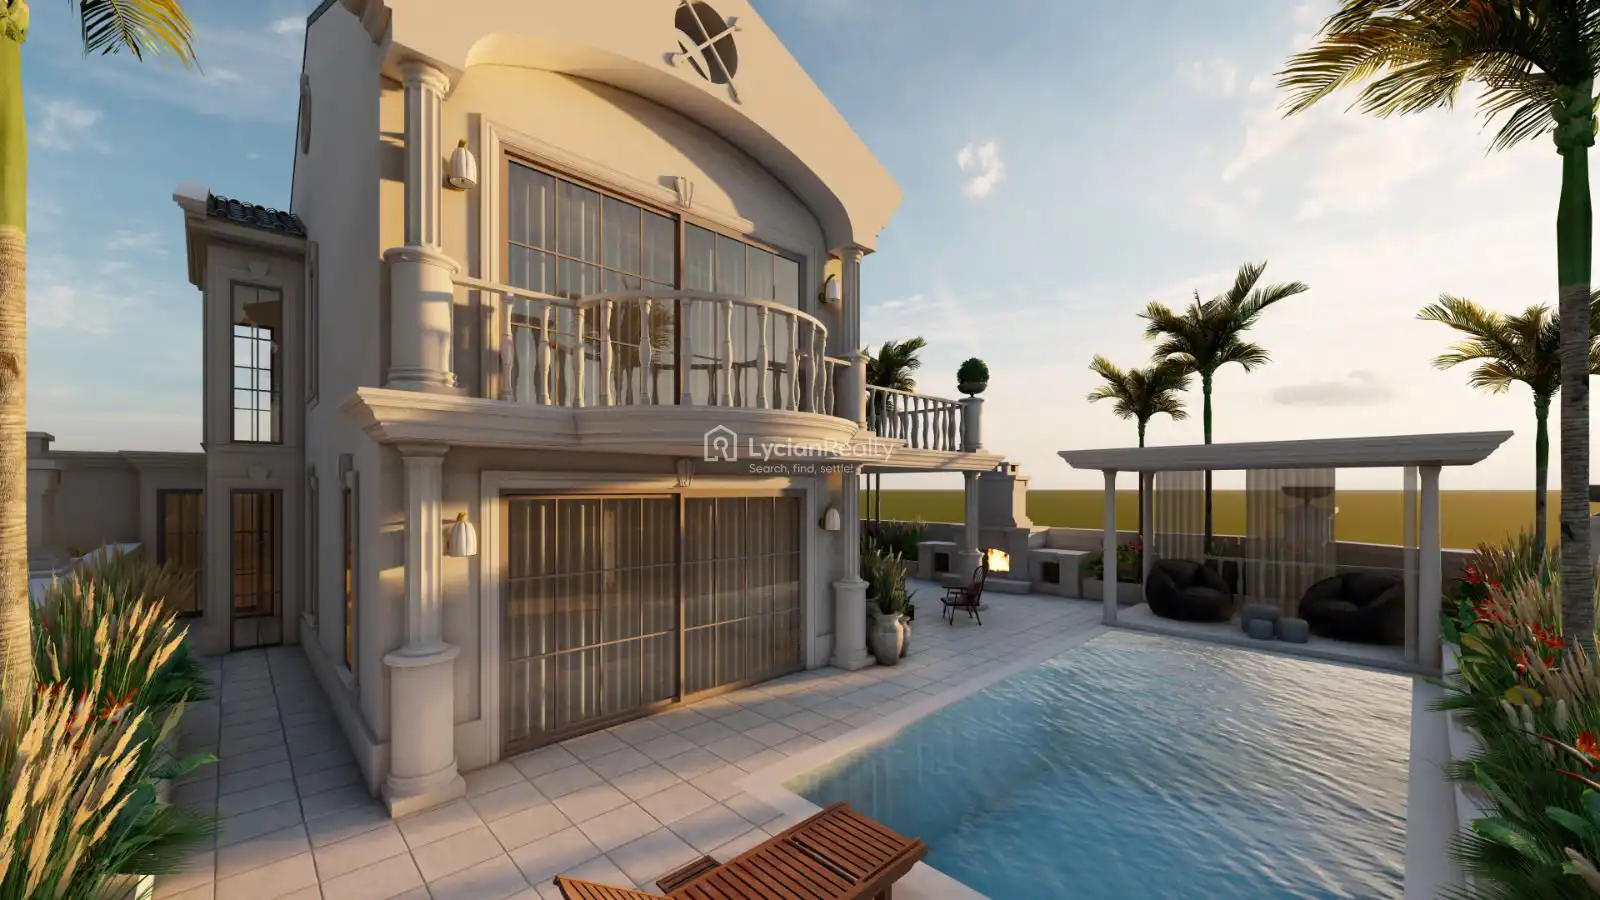 VILLA OM | New Project Luxury Villa